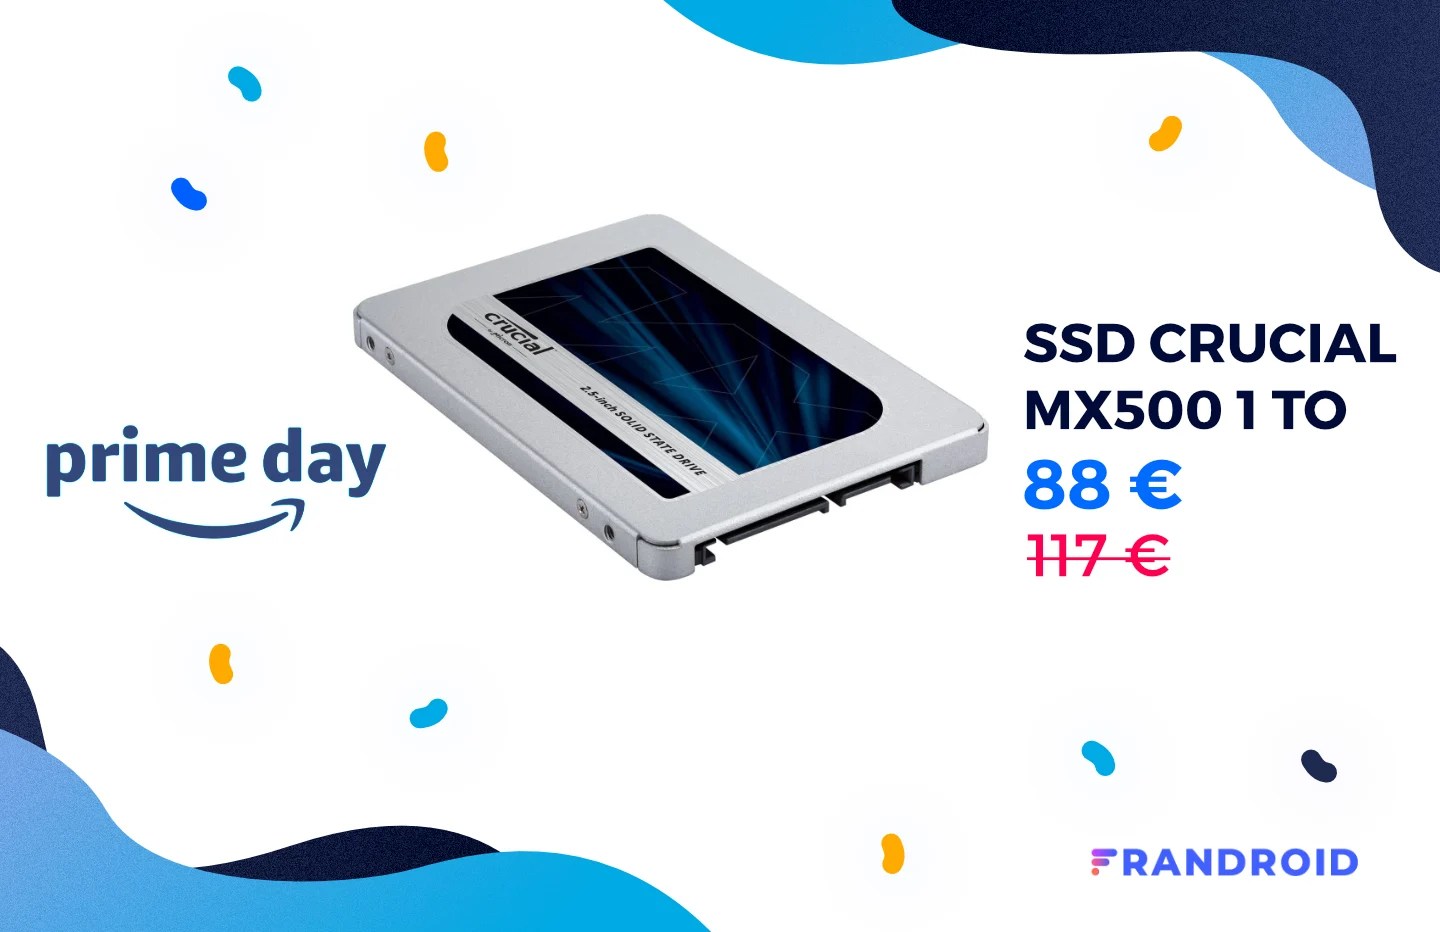 Le Prime Day propose un stockage ultra rapide à 0,09 €/Go avec le SSD Crucial MX500 1 To